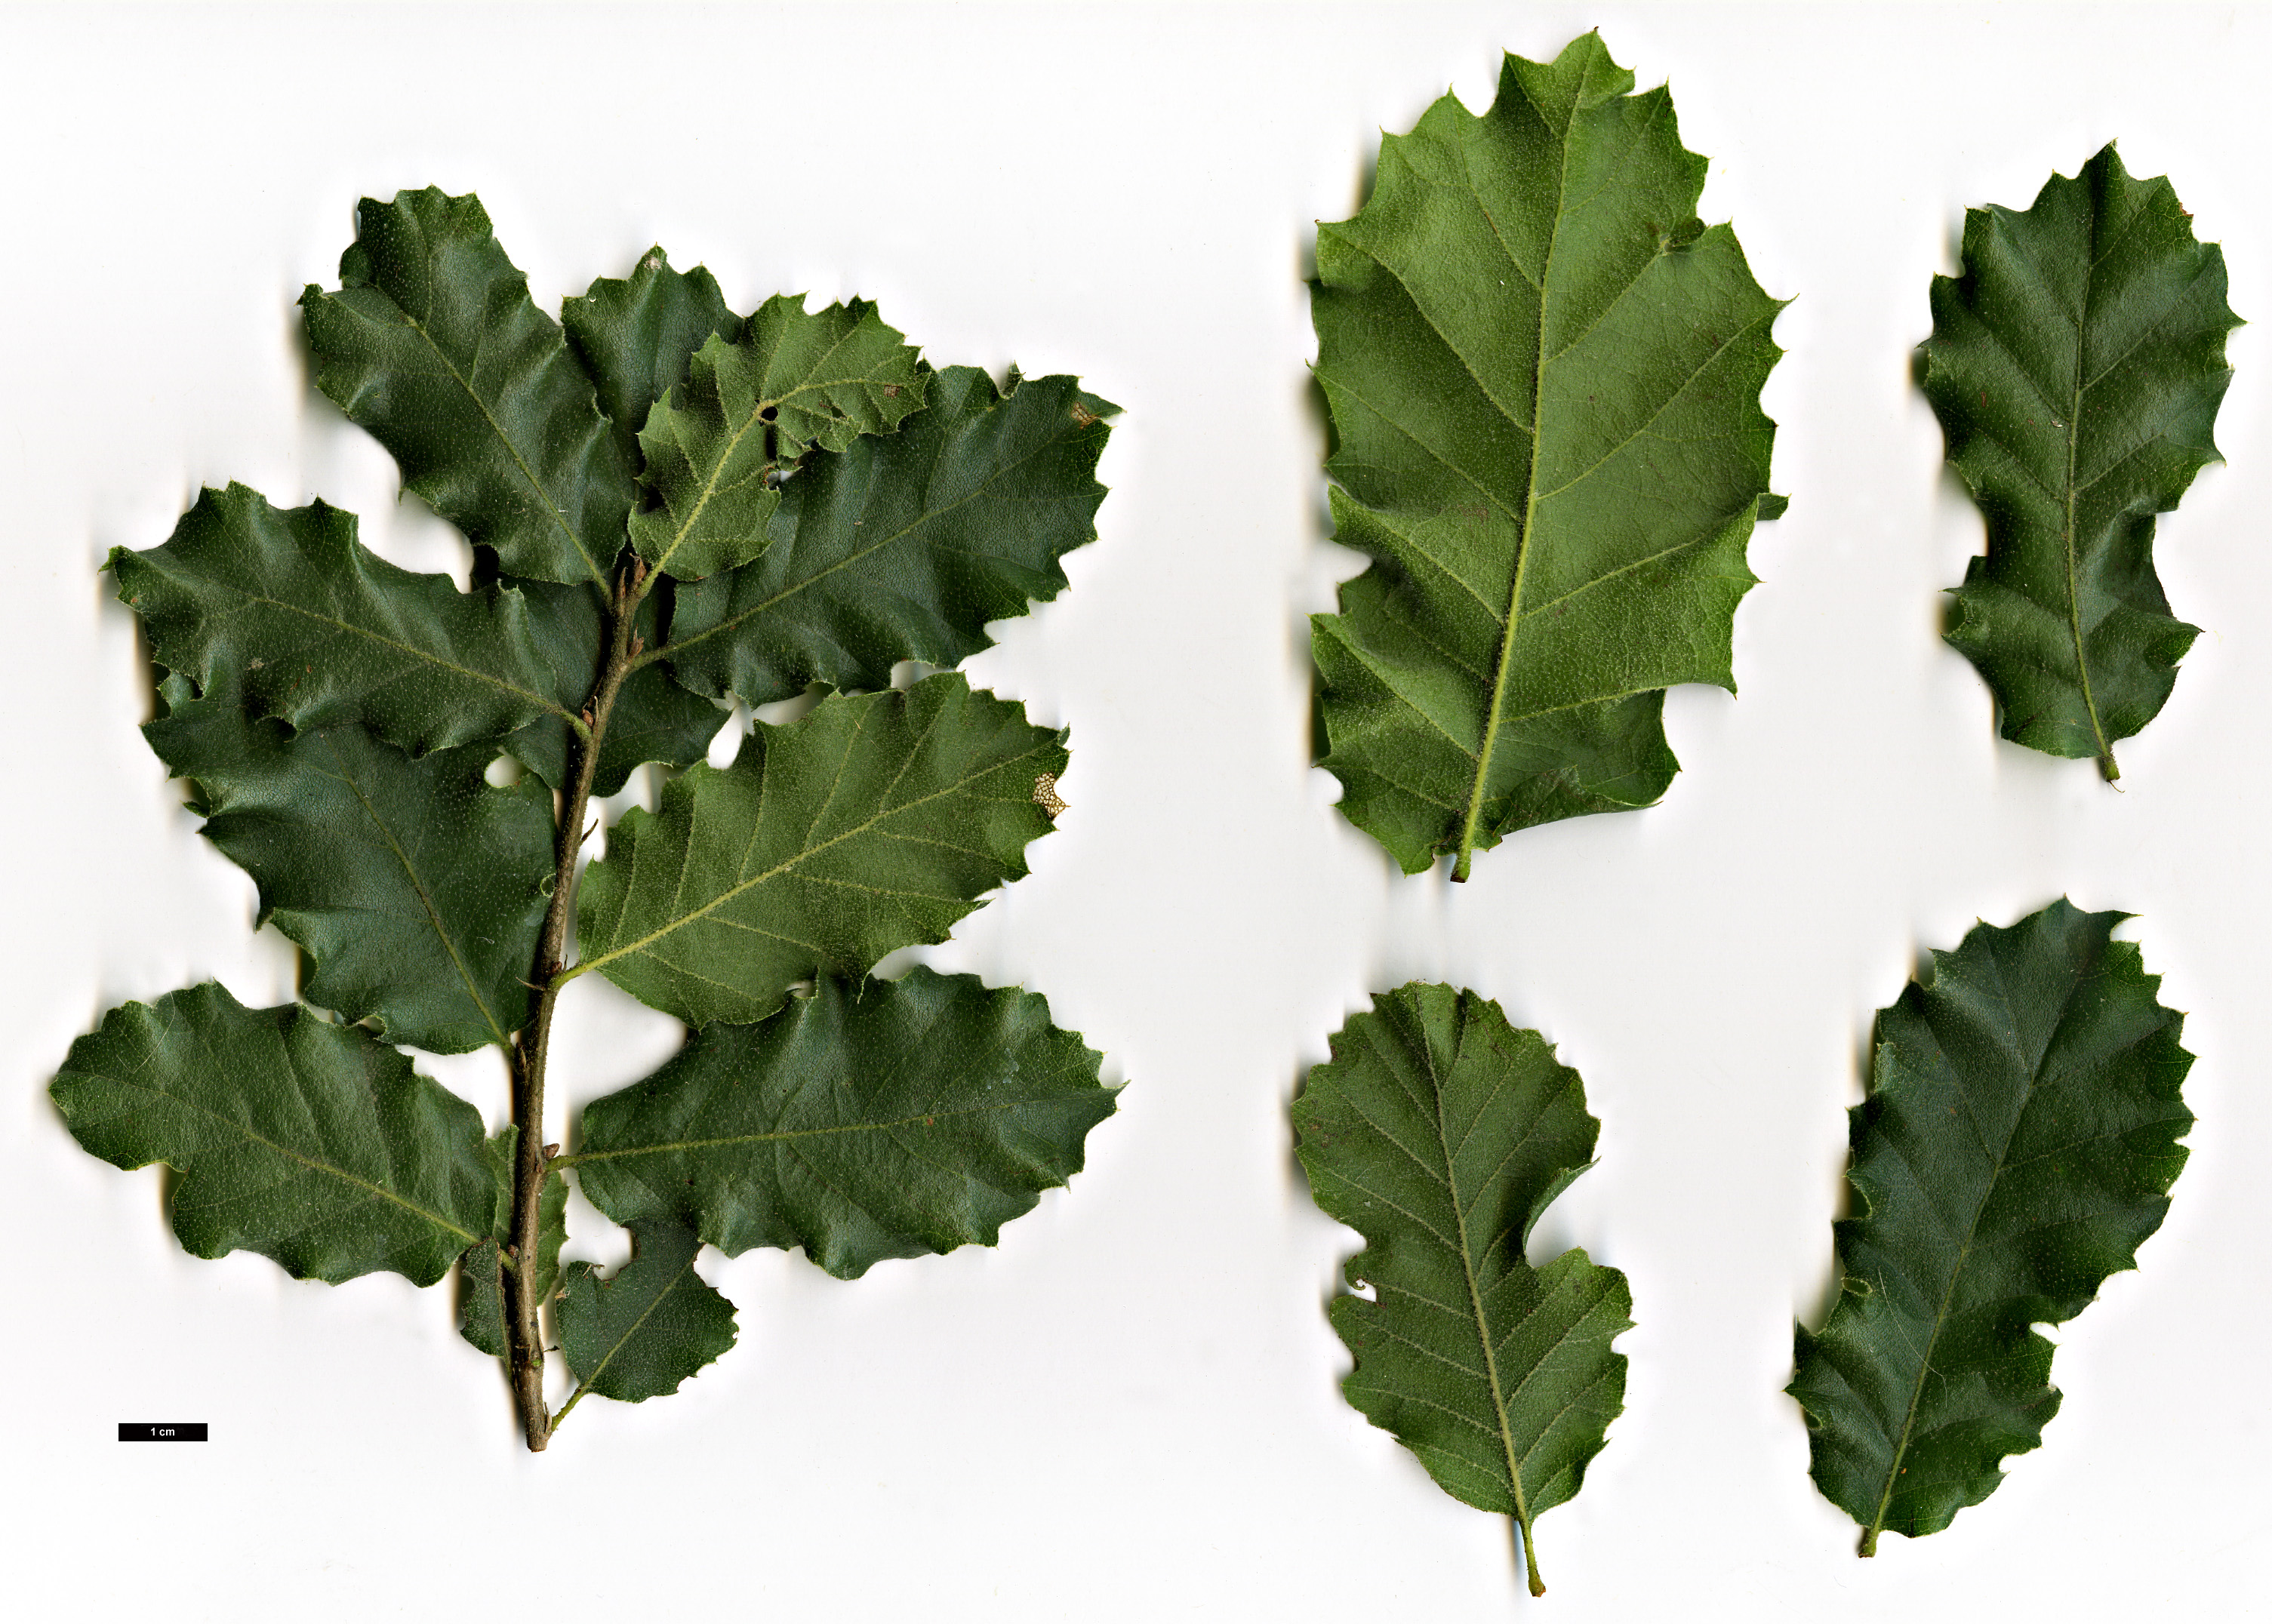 High resolution image: Family: Fagaceae - Genus: Quercus - Taxon: ithaburensis